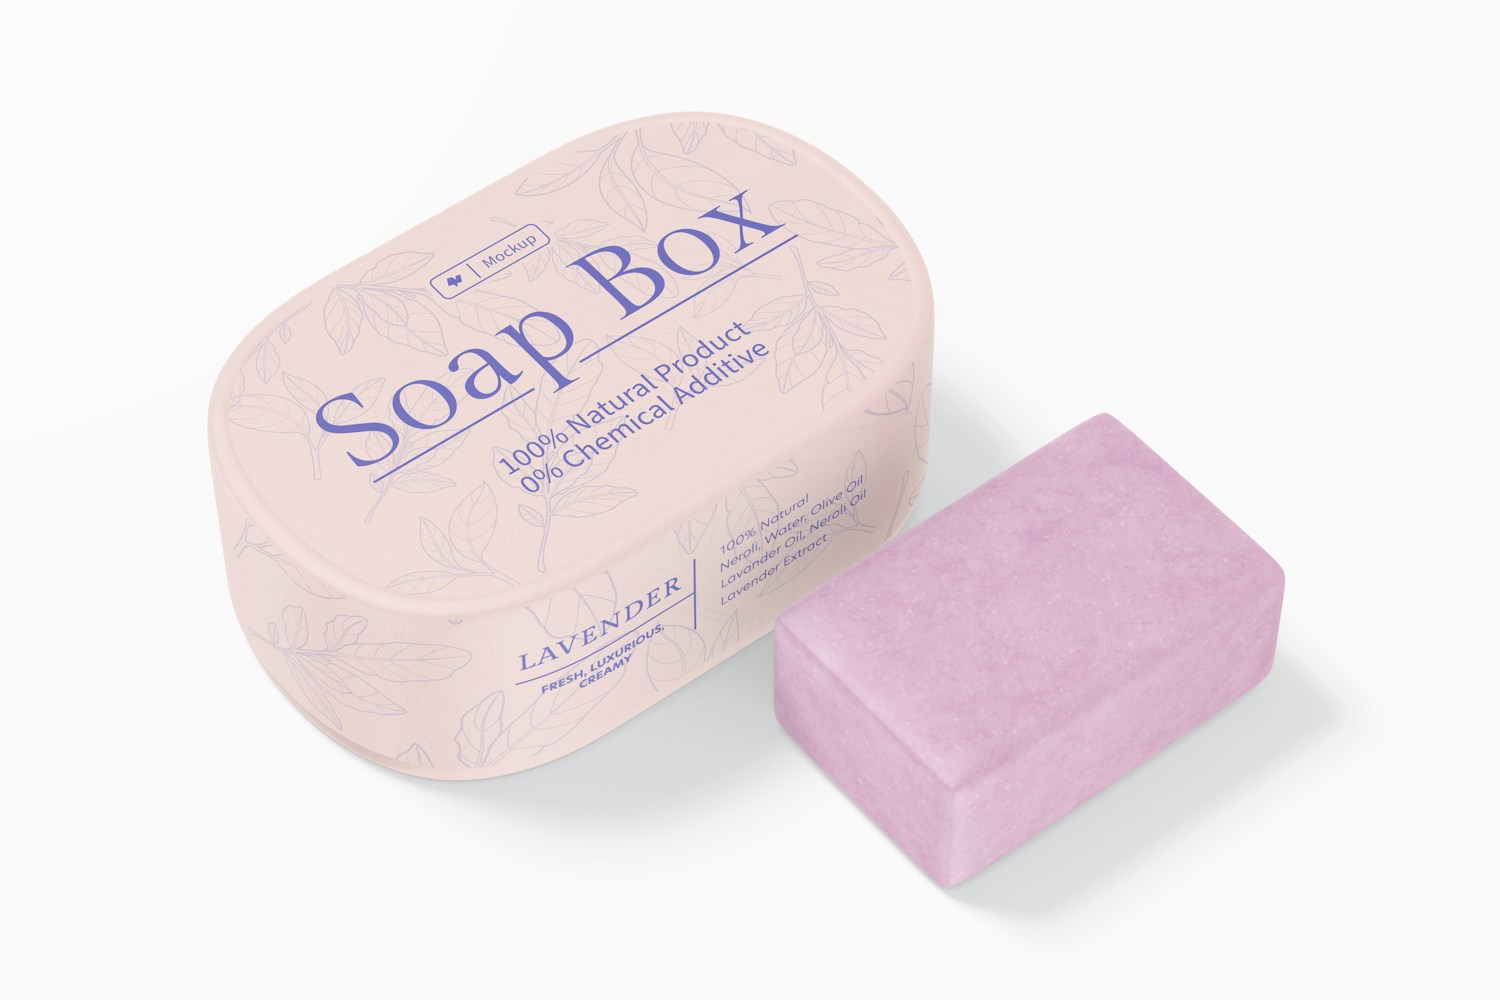 Soap Box Mockup